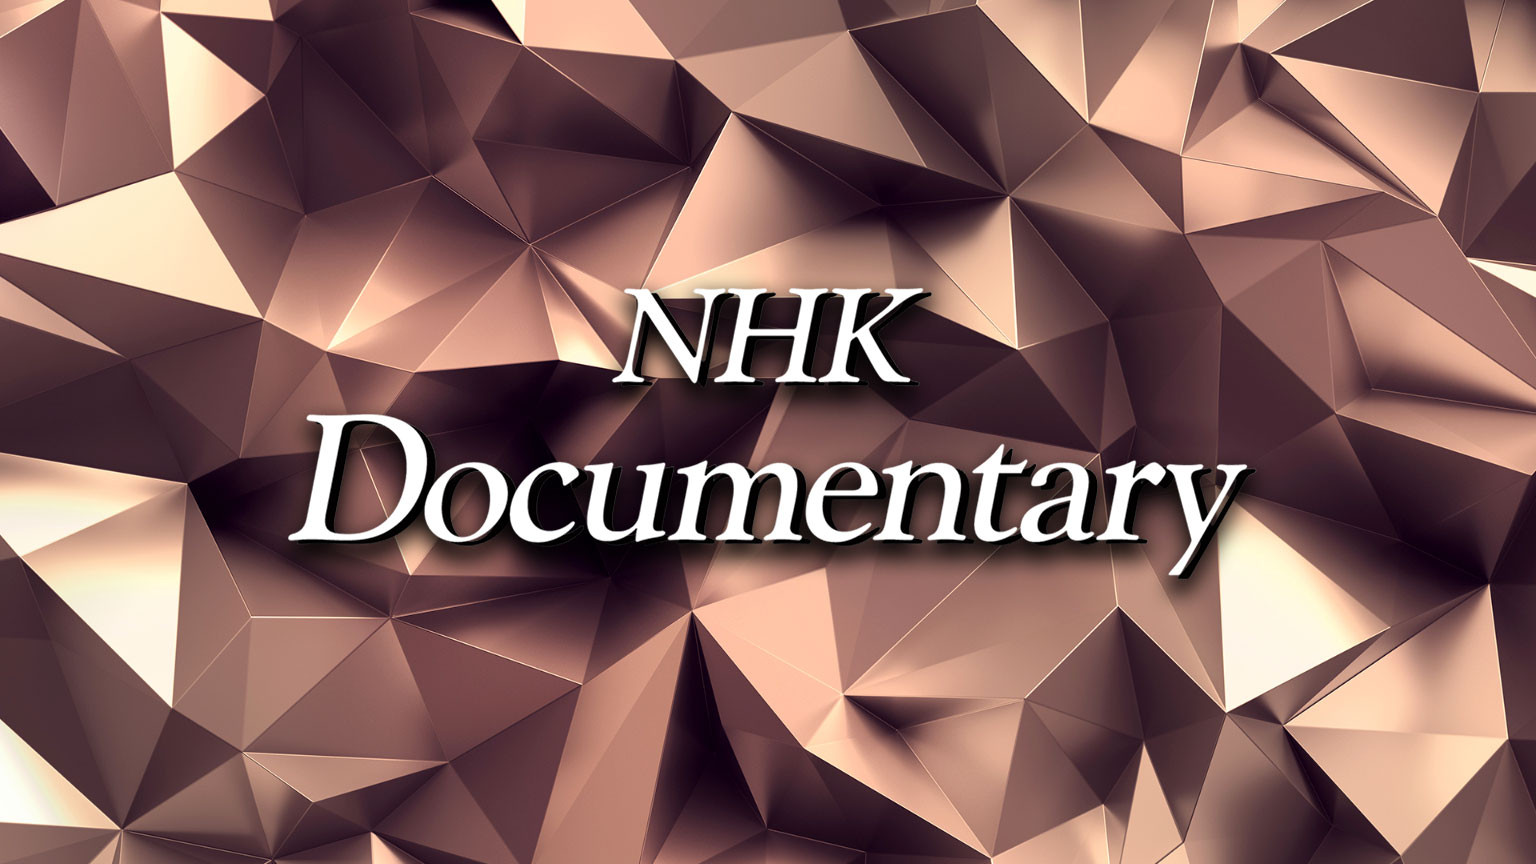 สารคดี NHK
NHK Documentary